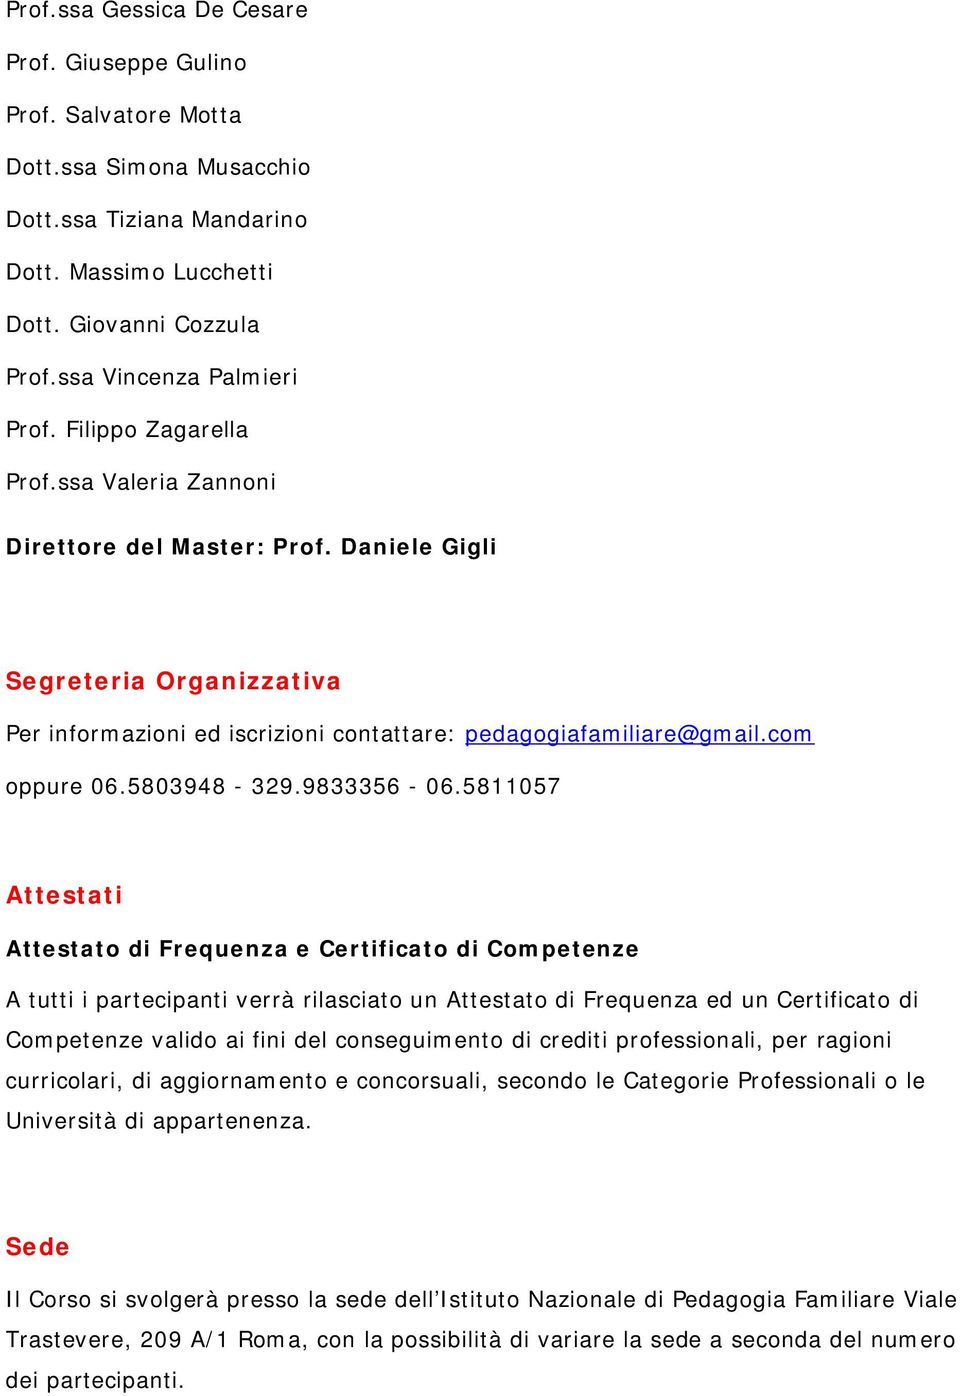 Daniele Gigli Segreteria Organizzativa Per informazioni ed iscrizioni contattare: pedagogiafamiliare@gmail.com oppure 06.5803948-329.9833356-06.